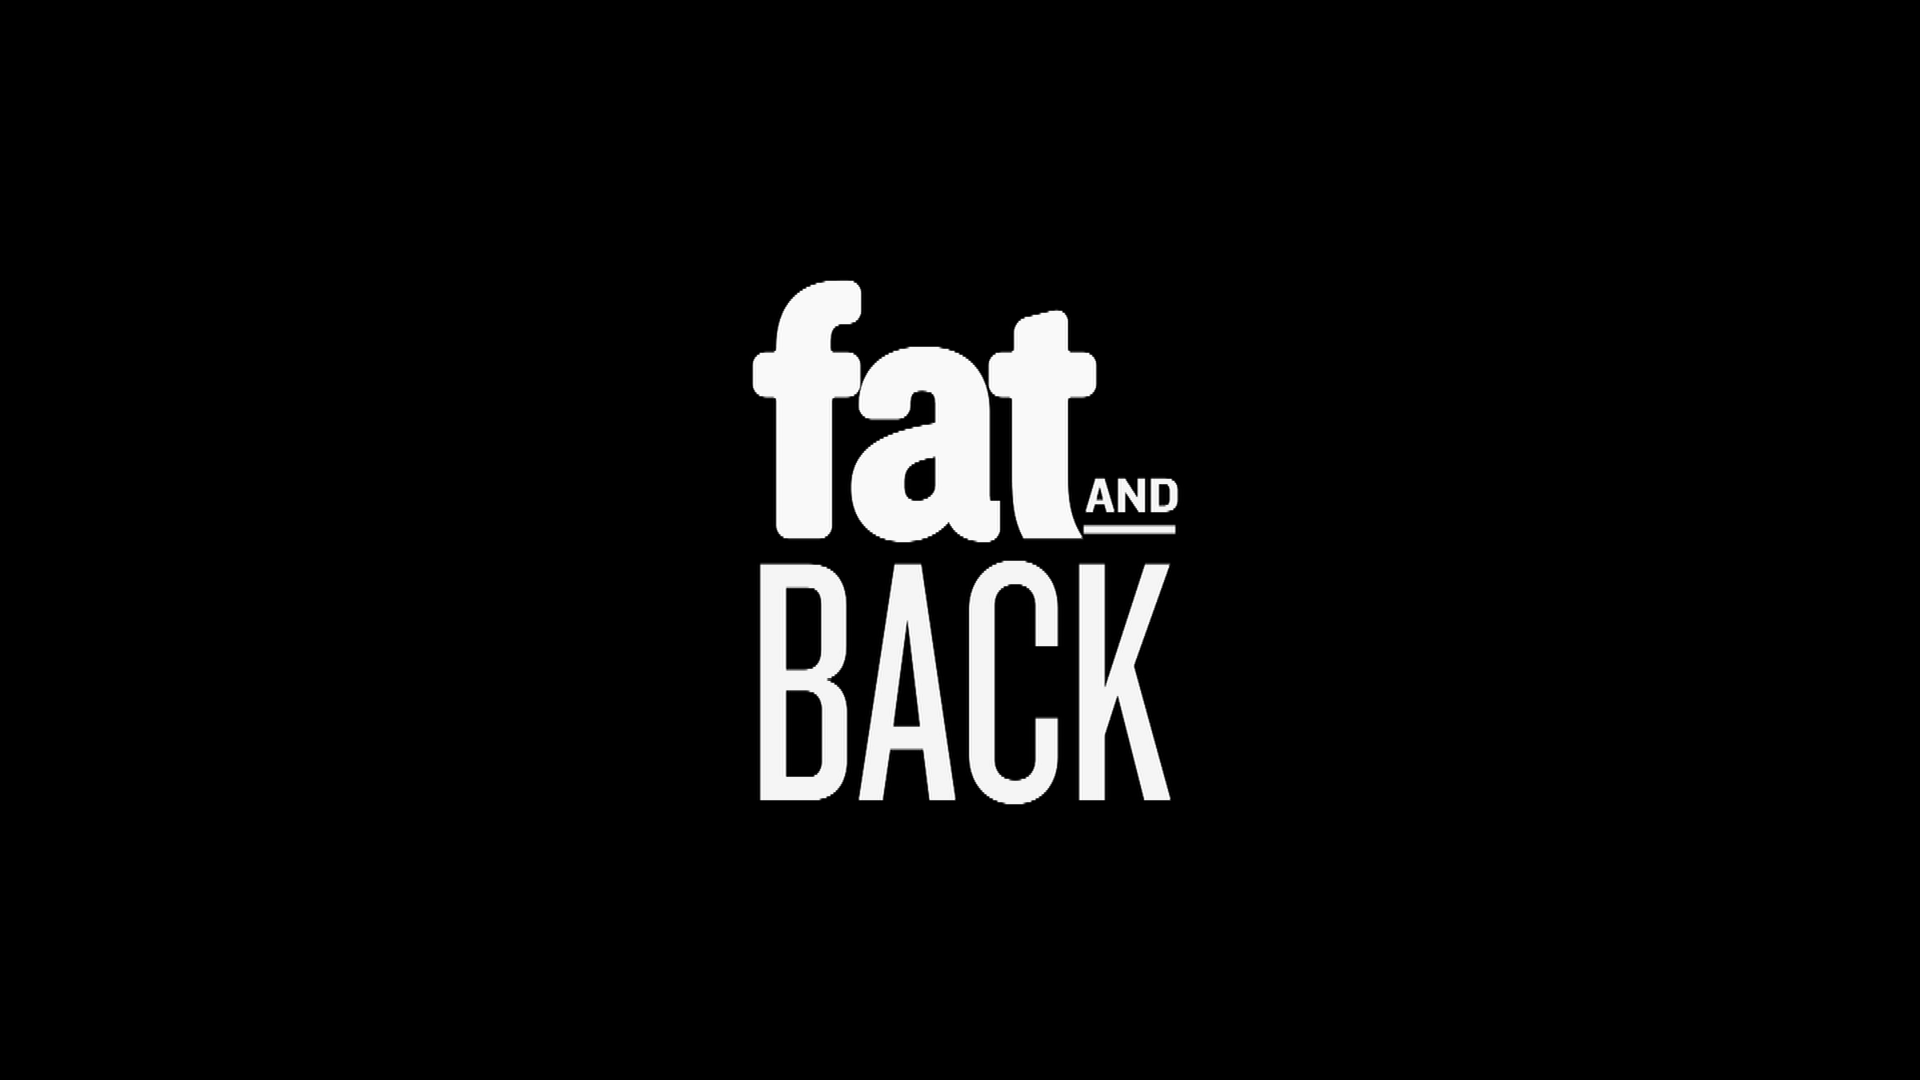 Fat & Back